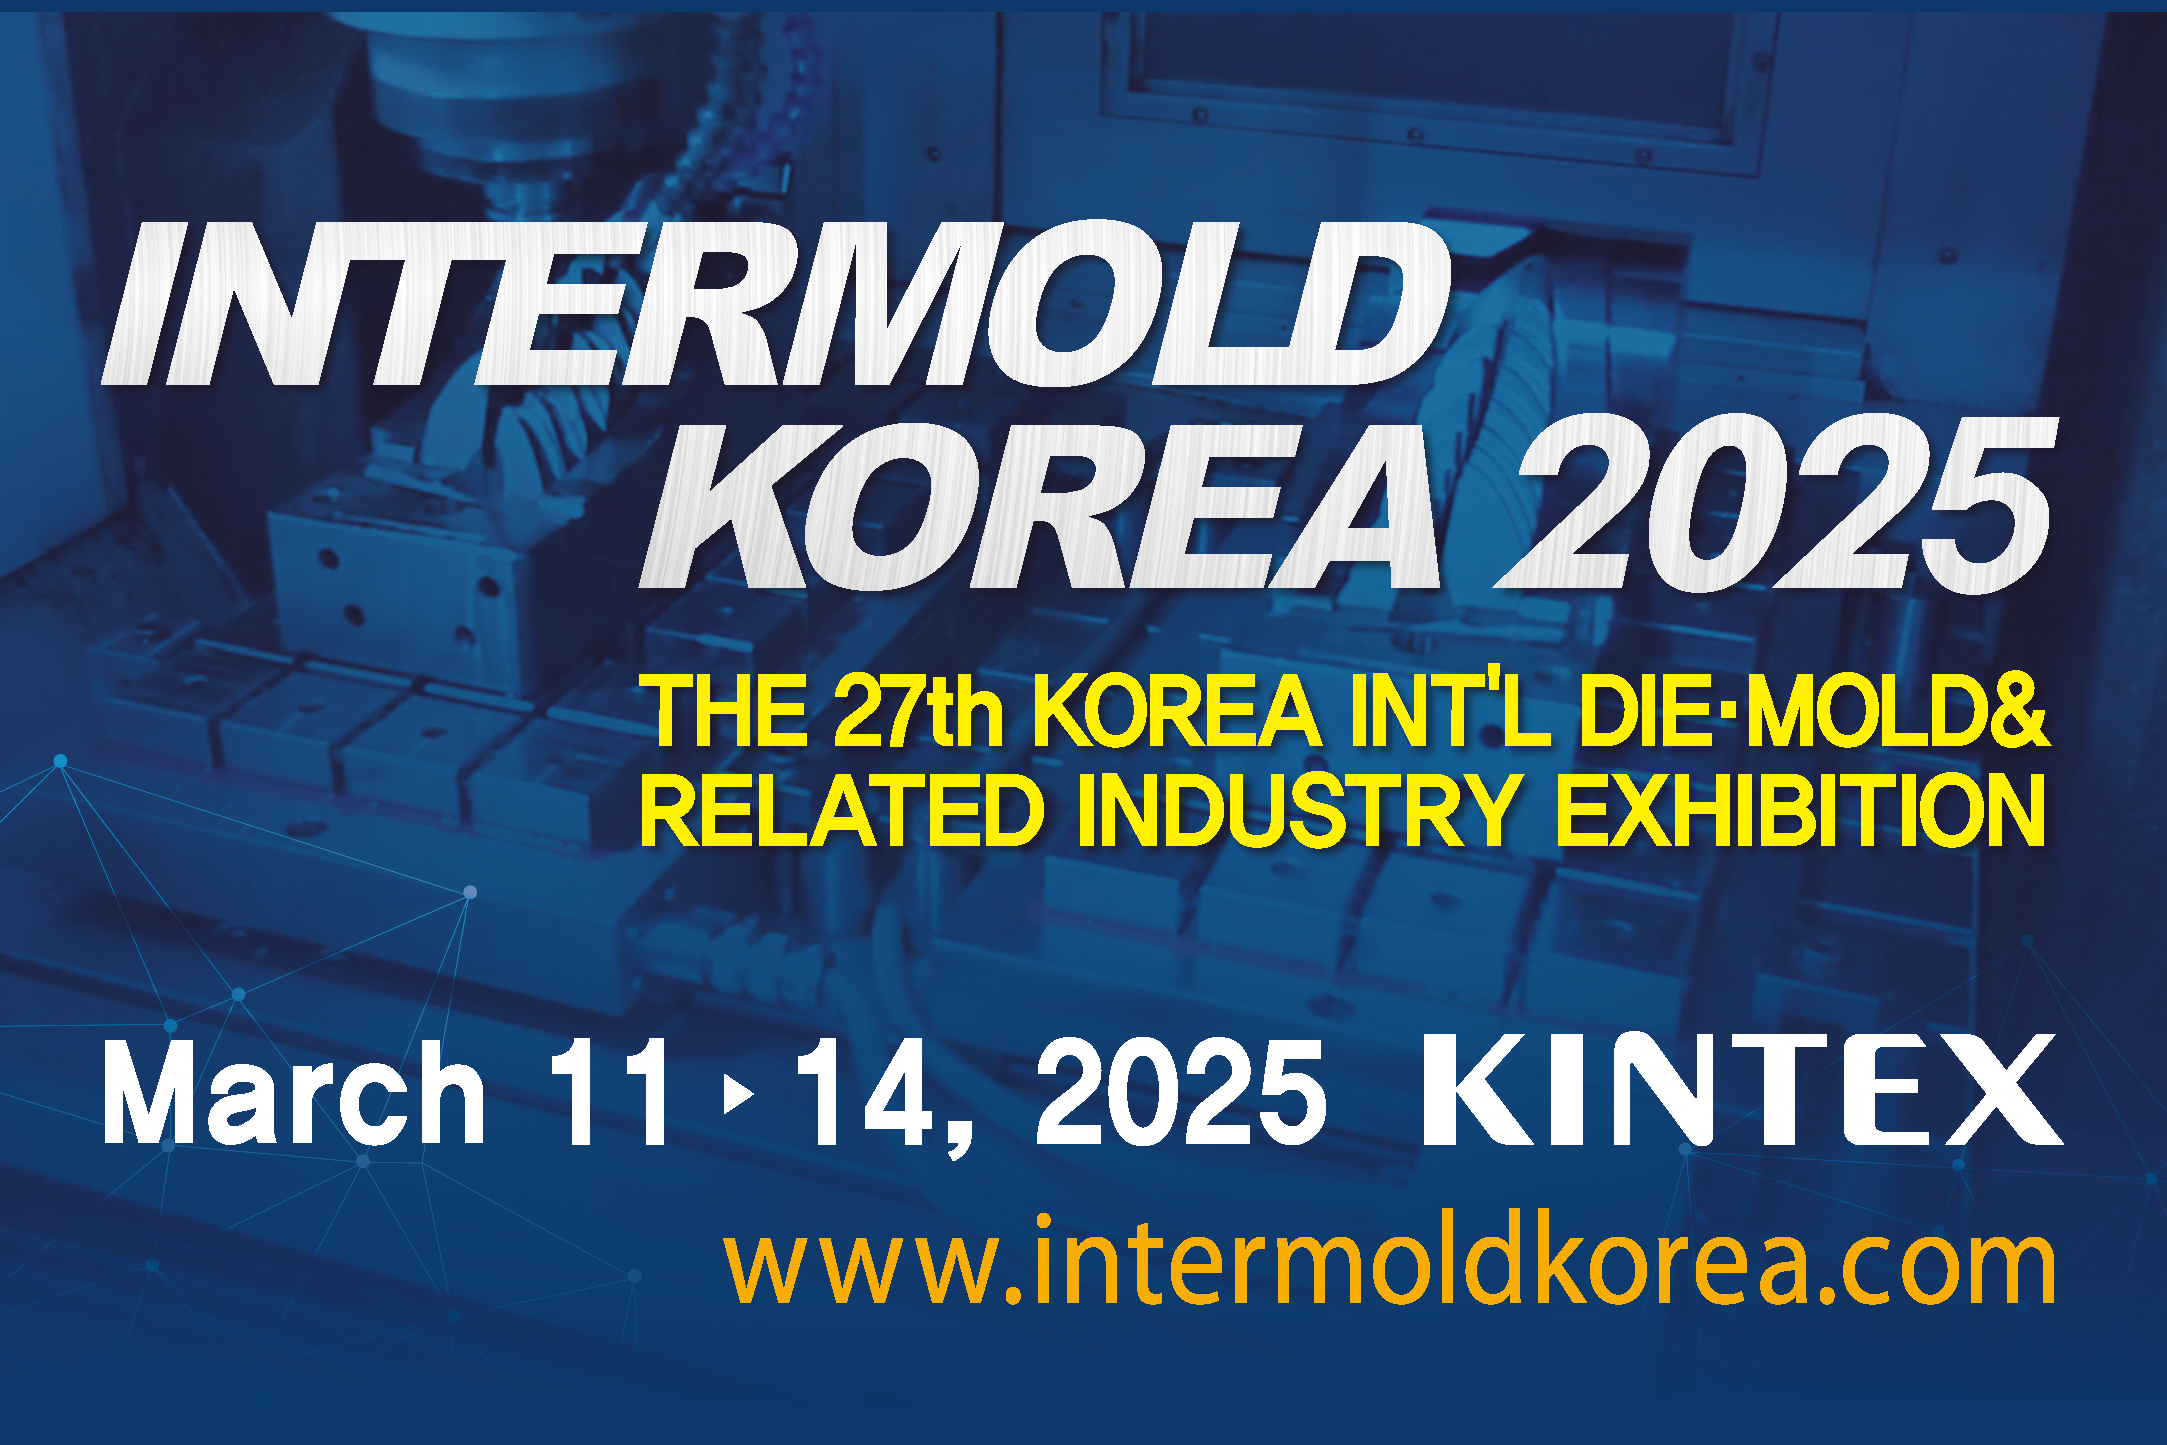 INTERMOLD KOREA